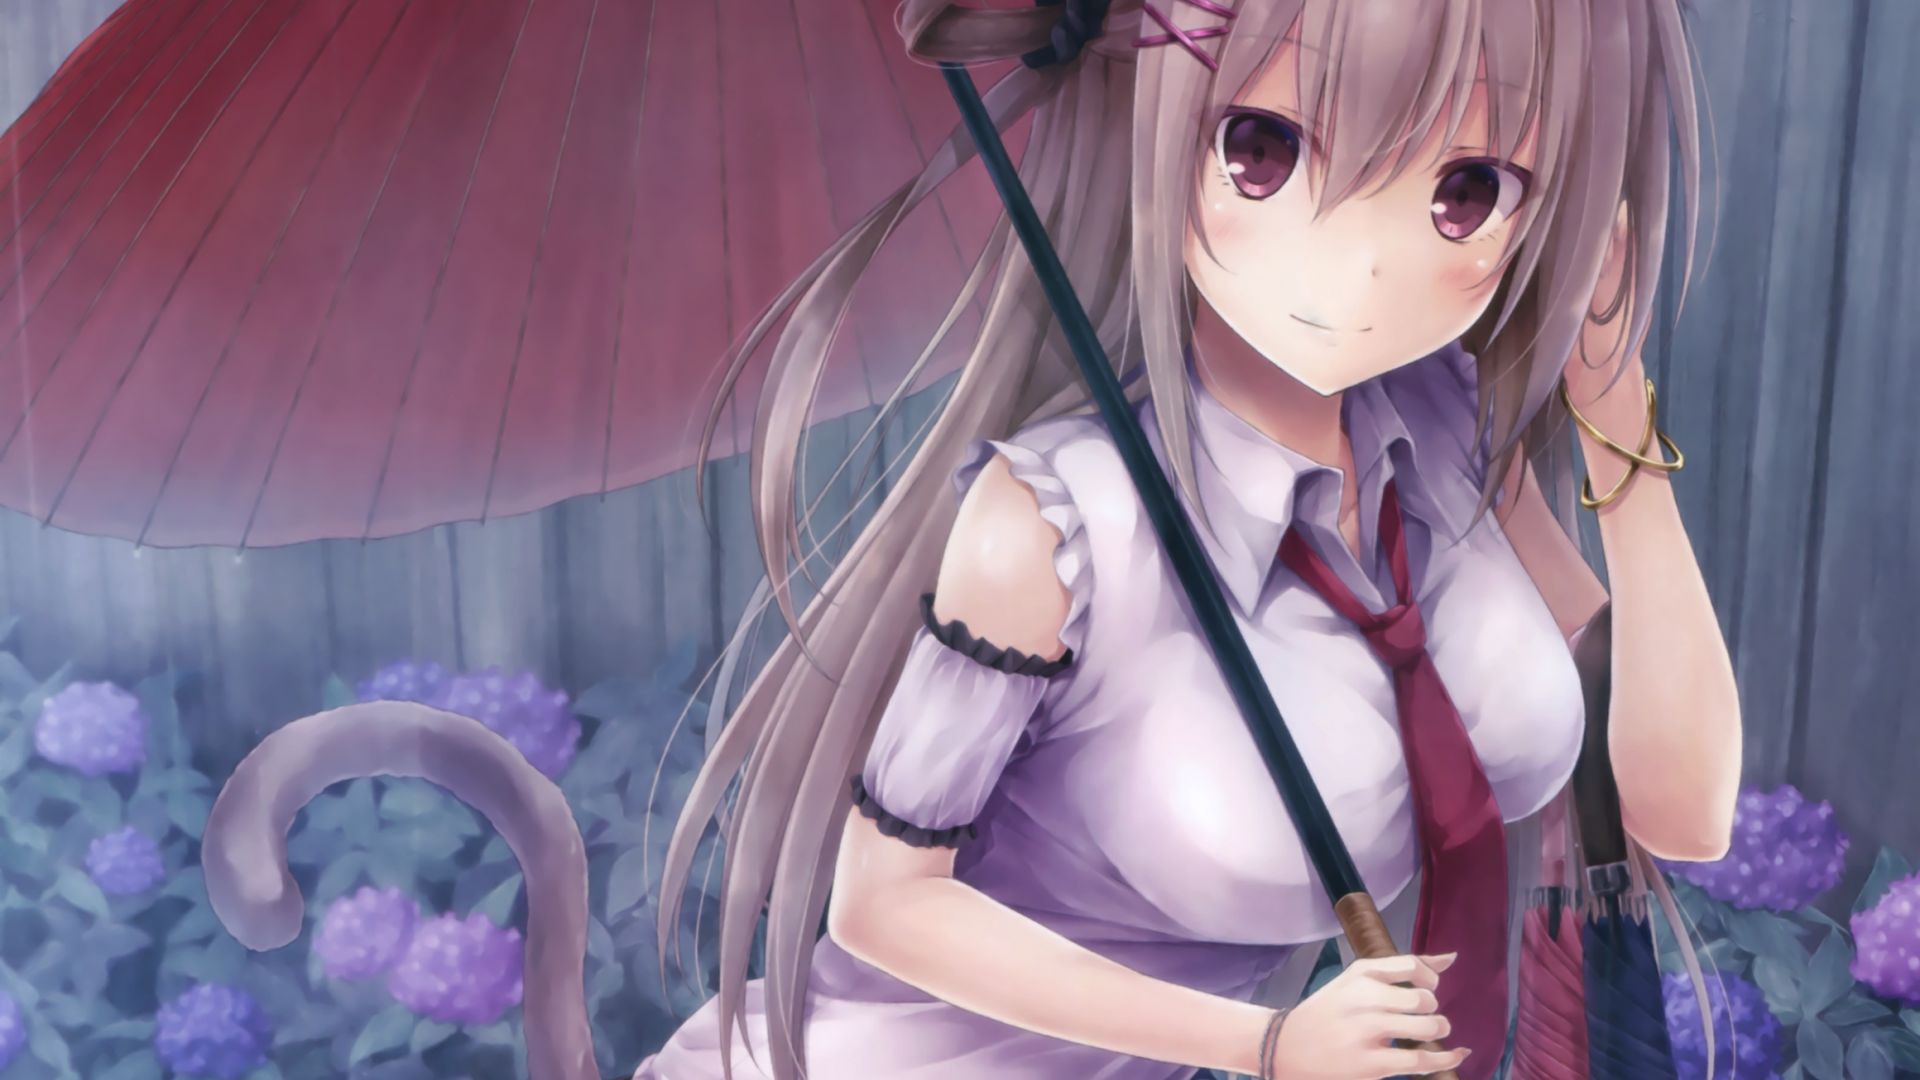 Wallpaper Umbrella, fox anime girl, original